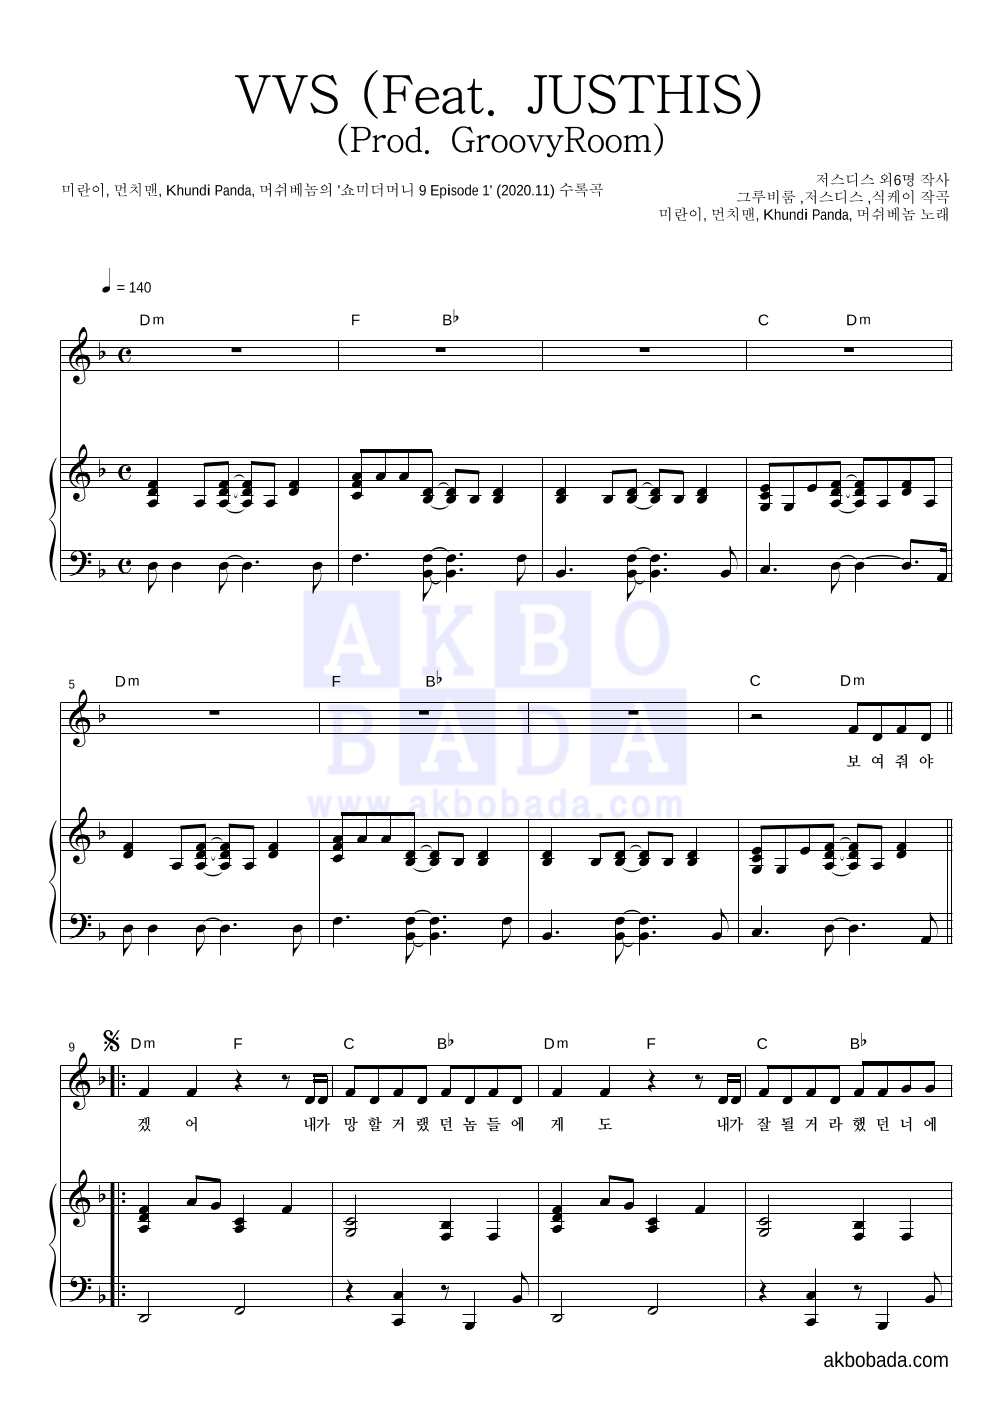 미란이,먼치맨,쿤디 판다,머쉬베놈 - VVS (Feat. JUSTHIS) (Prod. GroovyRoom) 피아노 3단 악보 